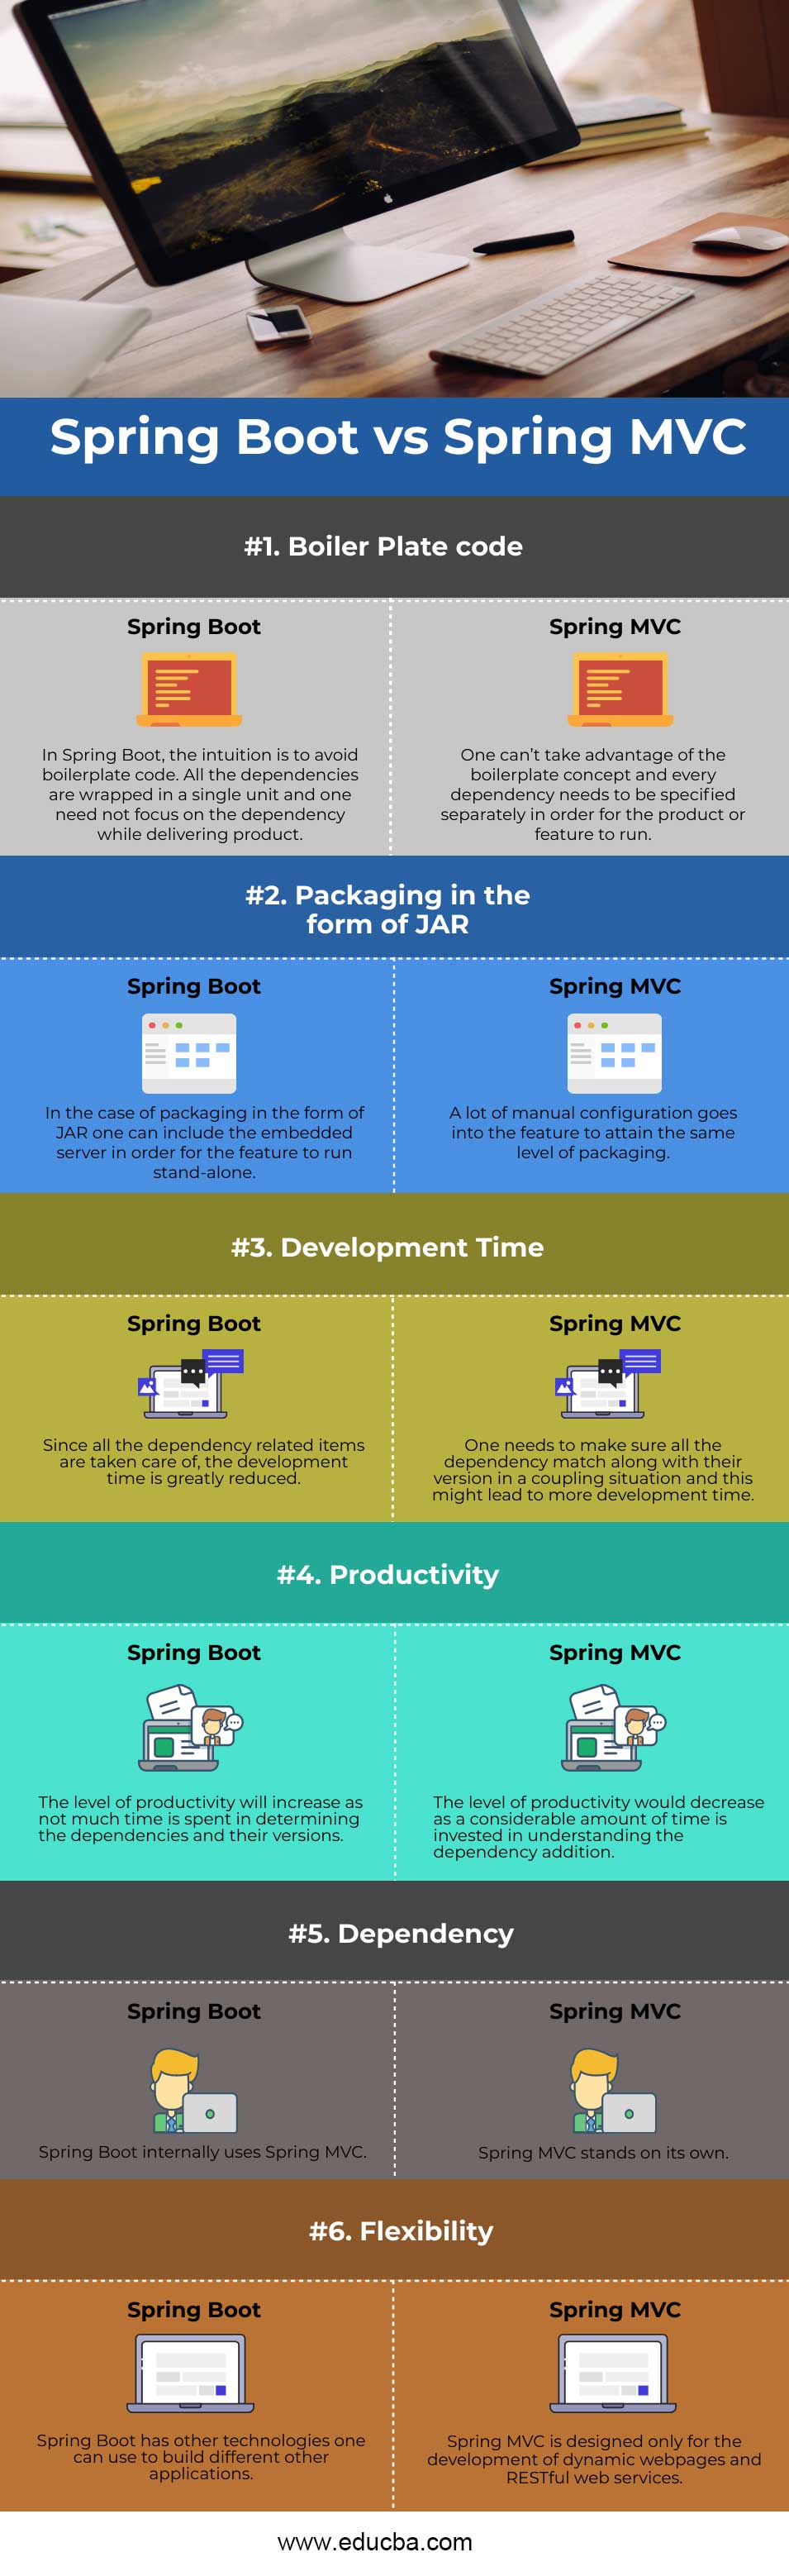 Spring-Boot-vs-Spring-MVC-info